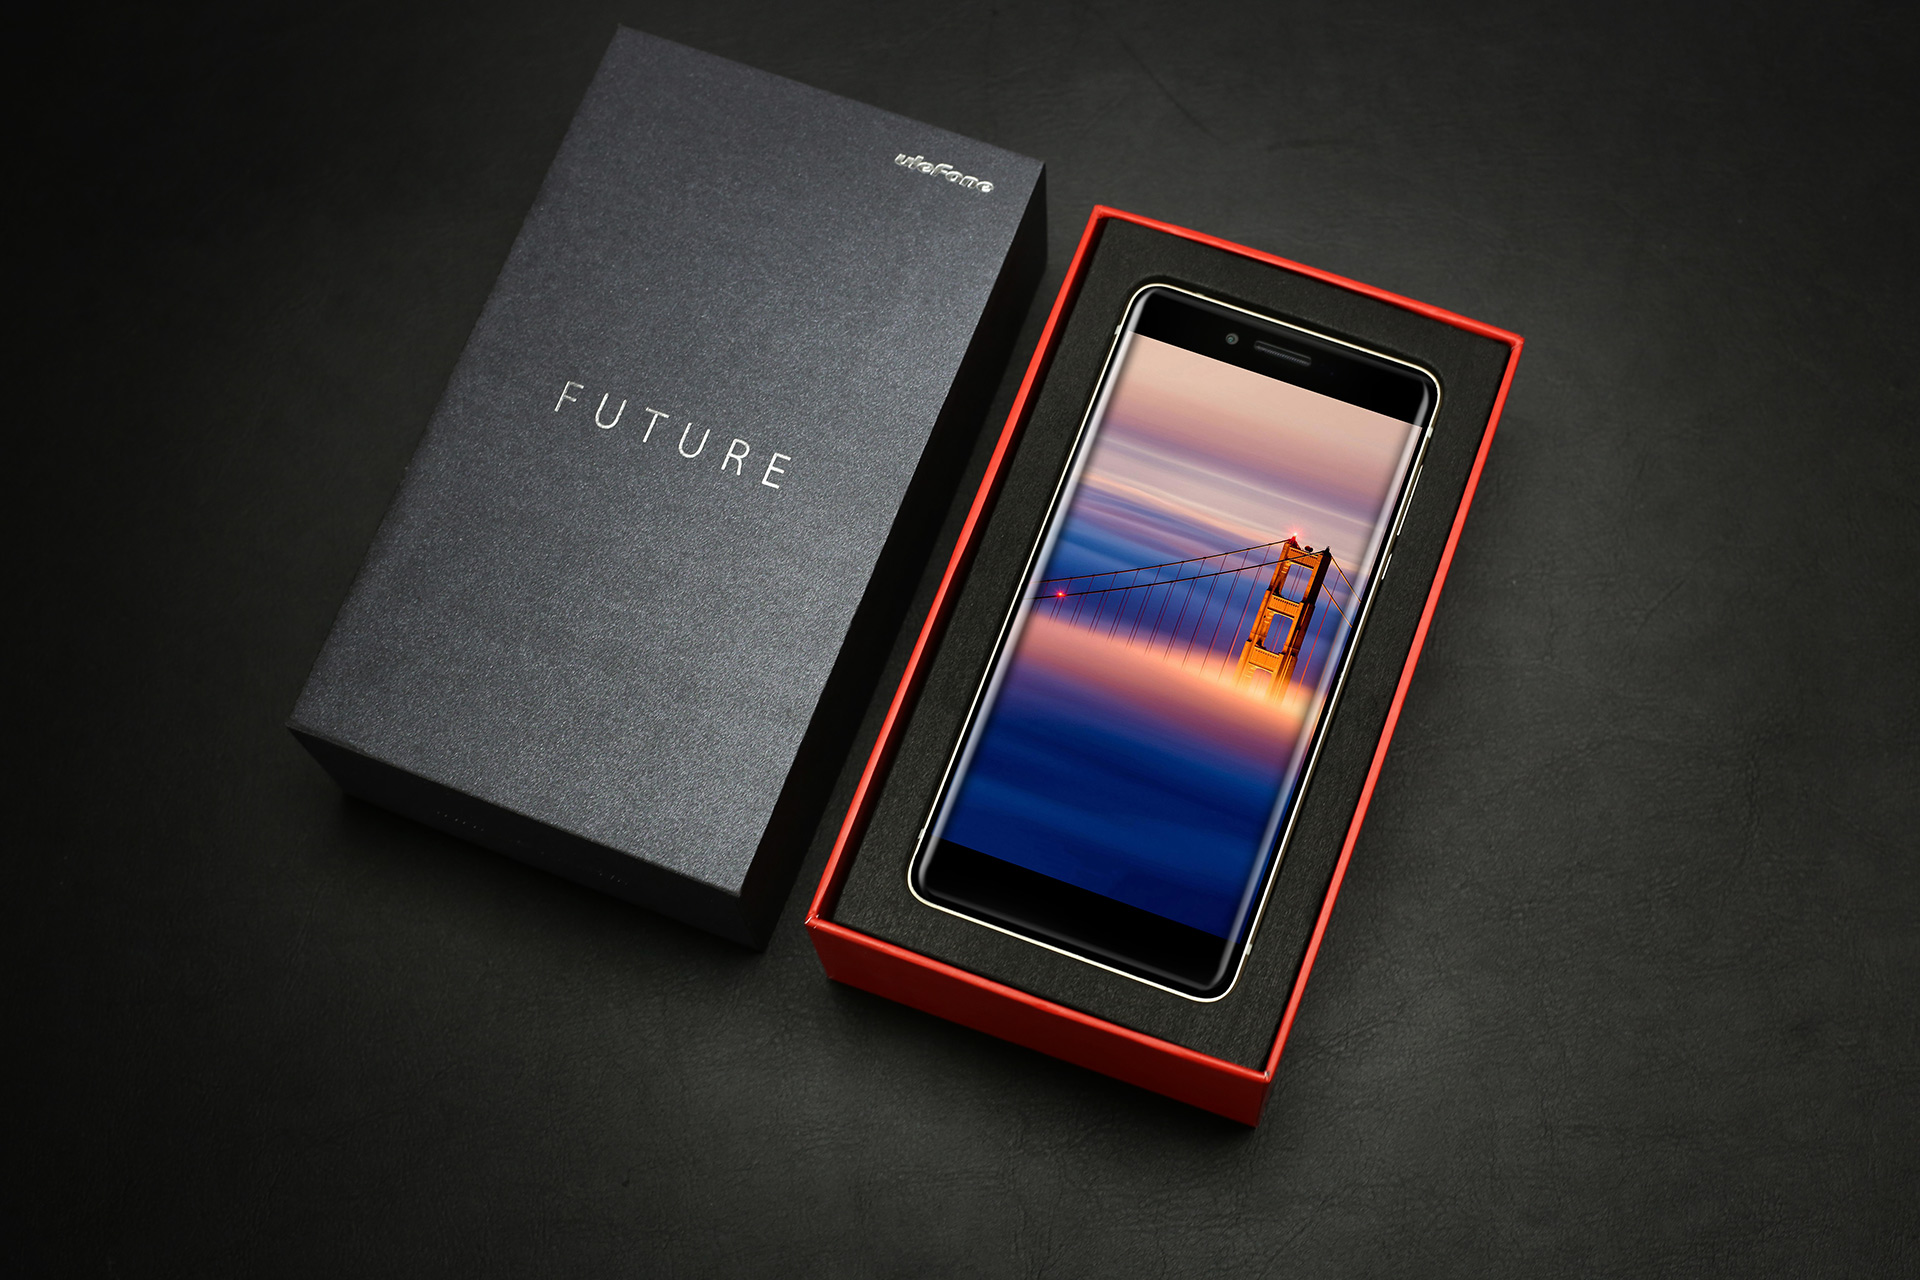 Ulefone-Future